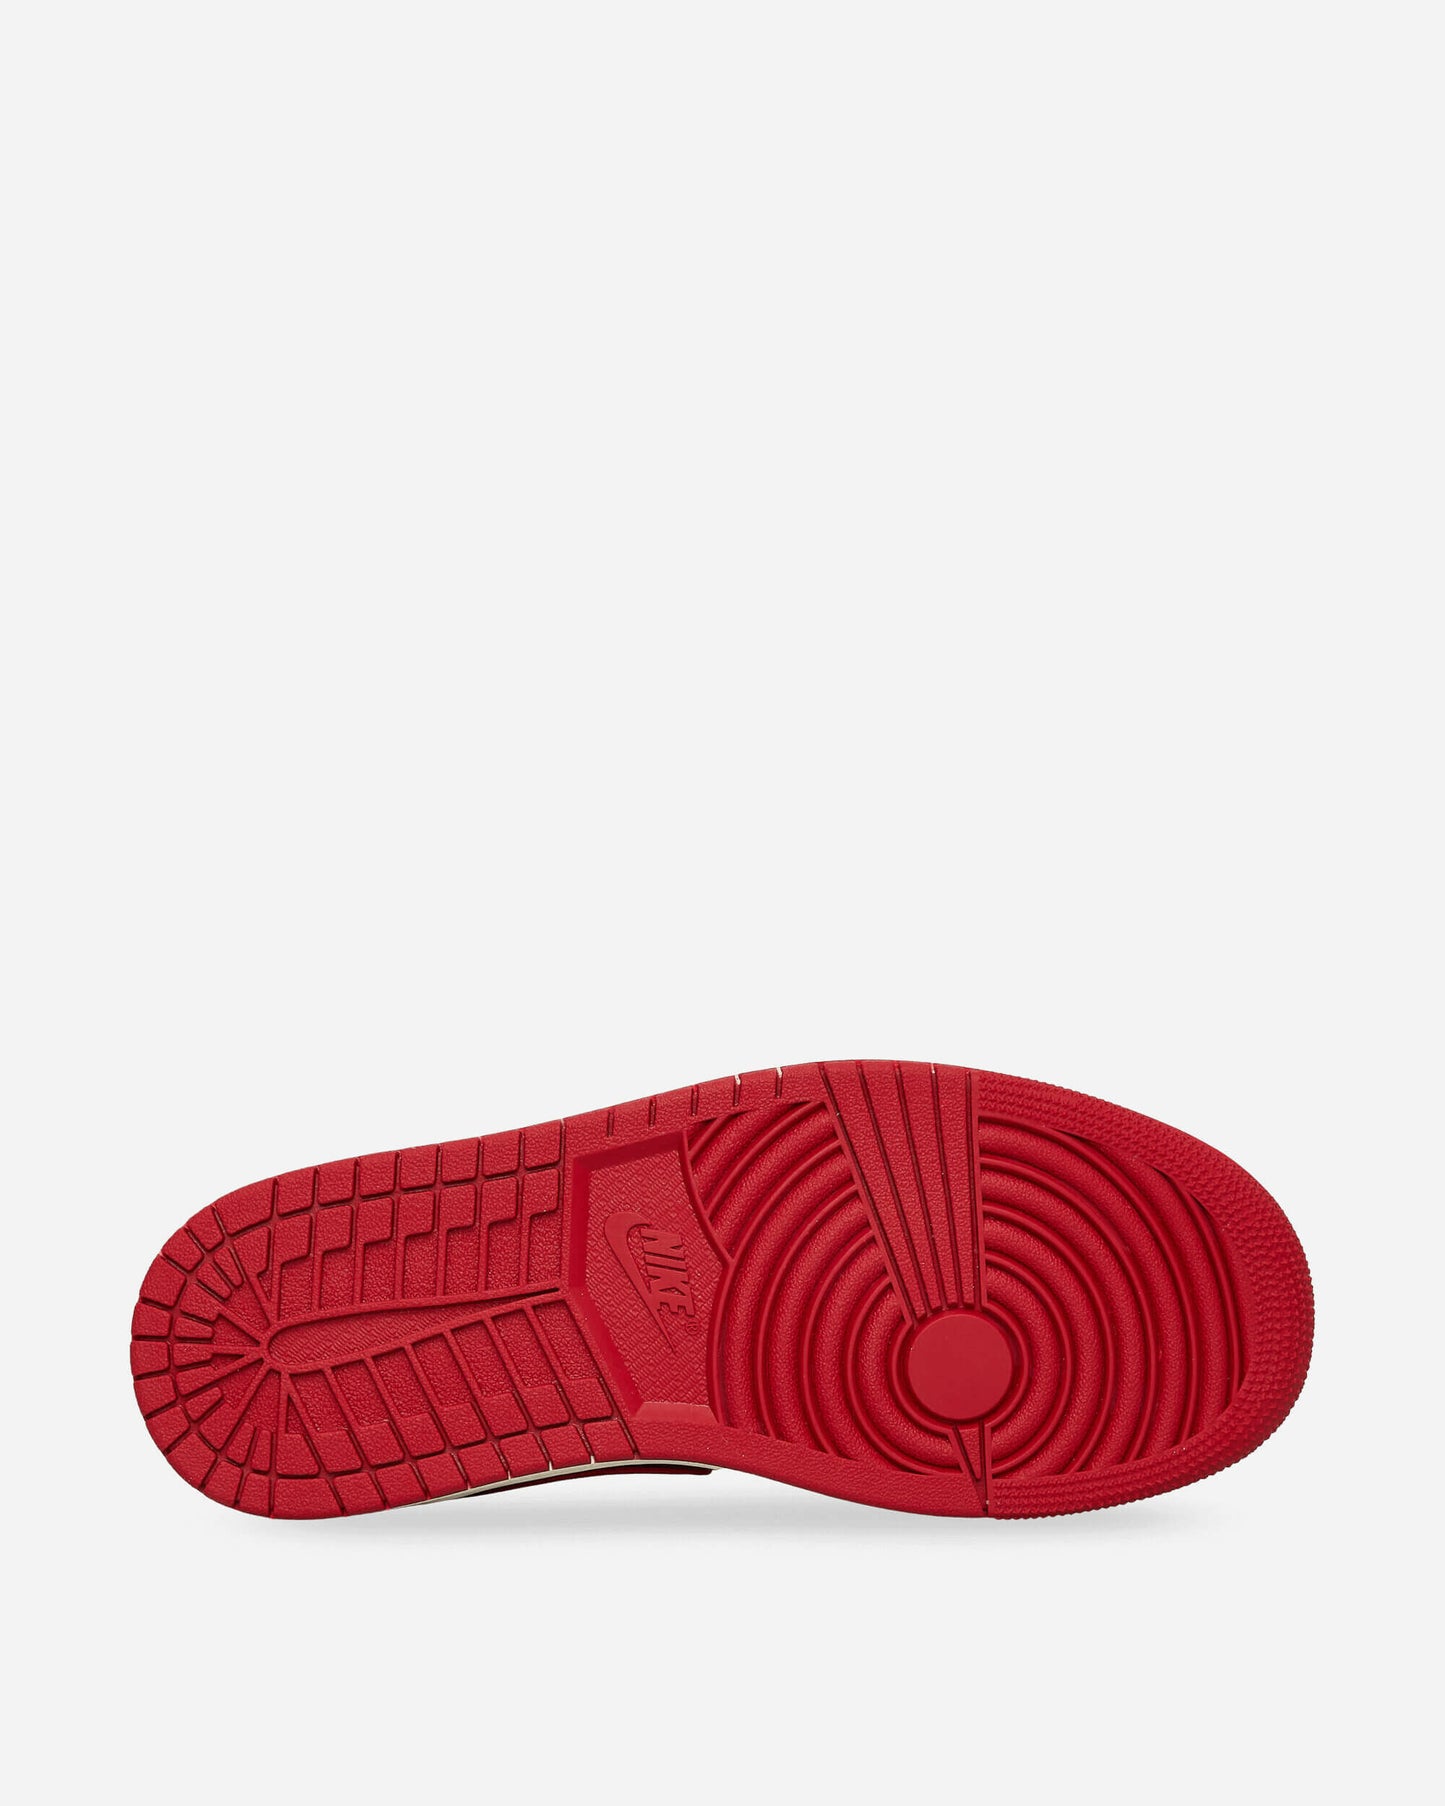 Nike Jordan Wmns Air Jordan 1 Low Black/Gym Red/Sail Sneakers Low DC0774-061